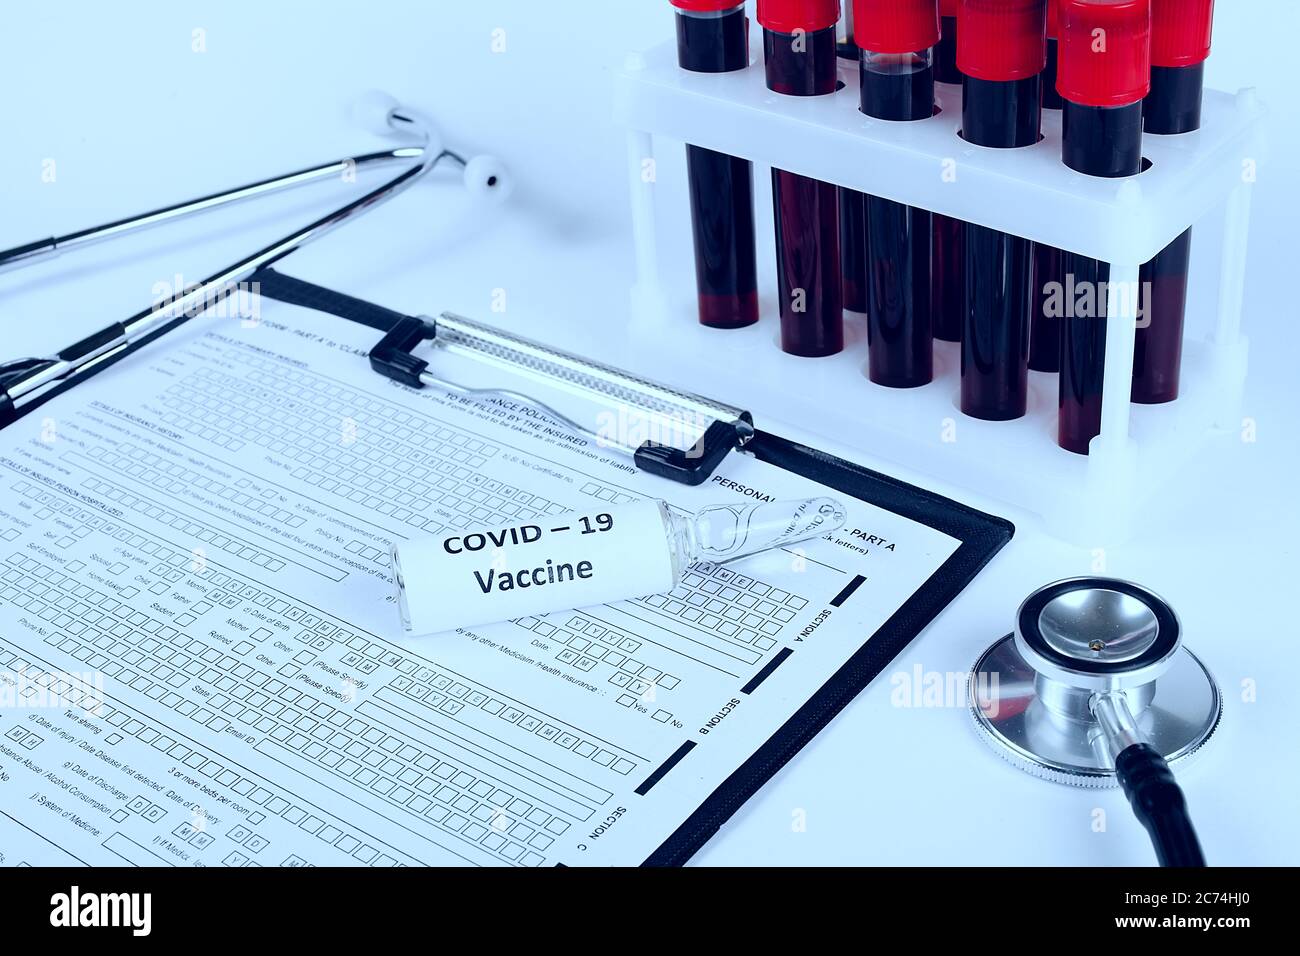 Coronavirus-Impfampulle liegt auf einem Arzttisch, getönte blaue Farbe Stockfoto